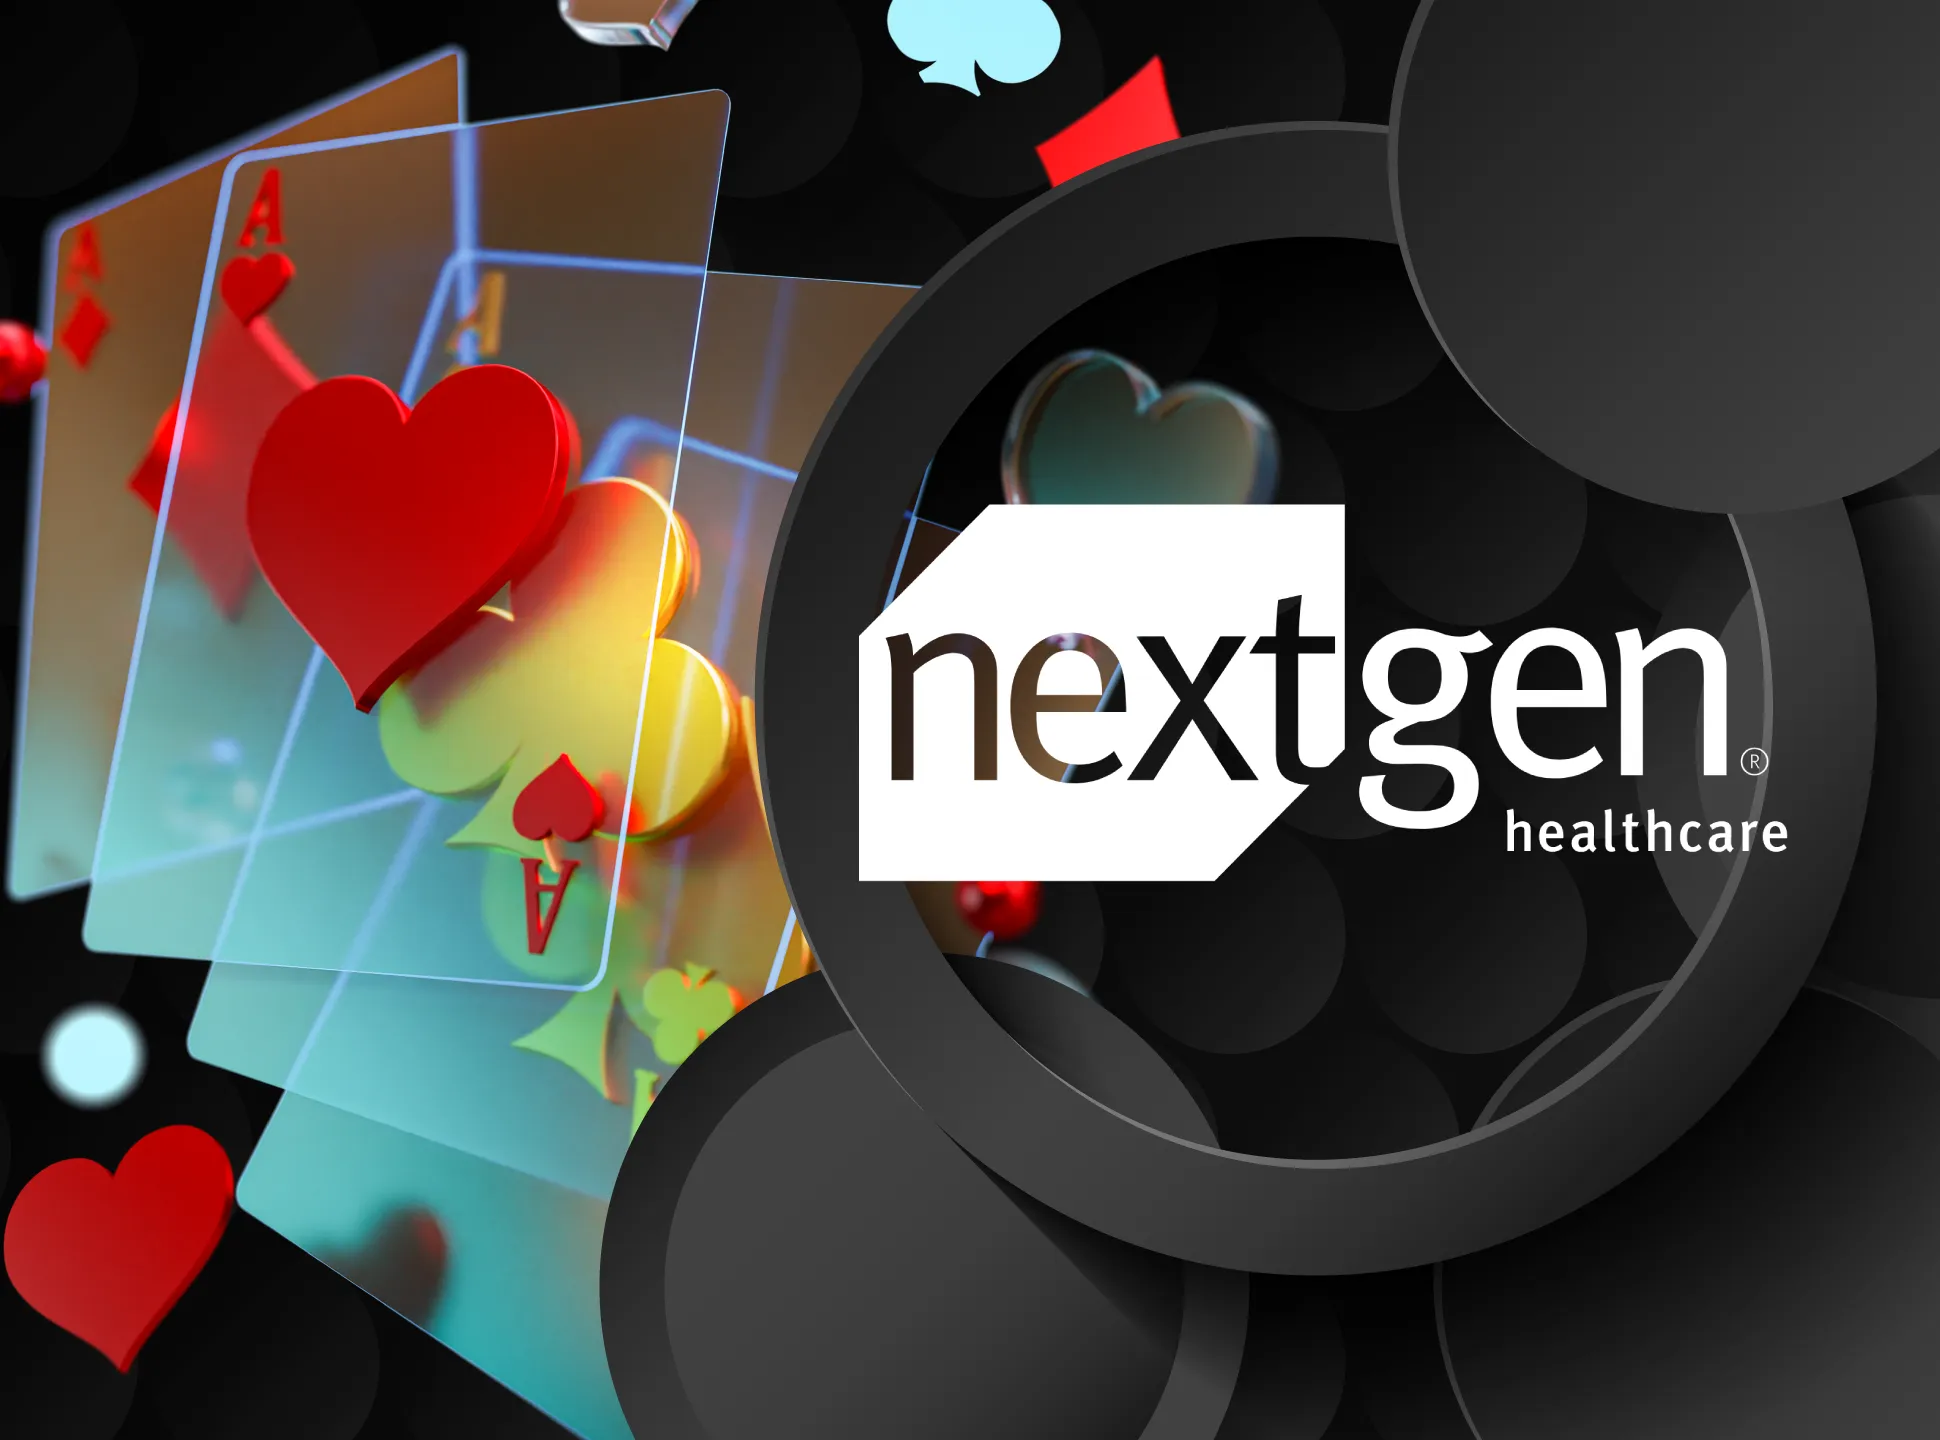 NextGen has been operated since 1999.